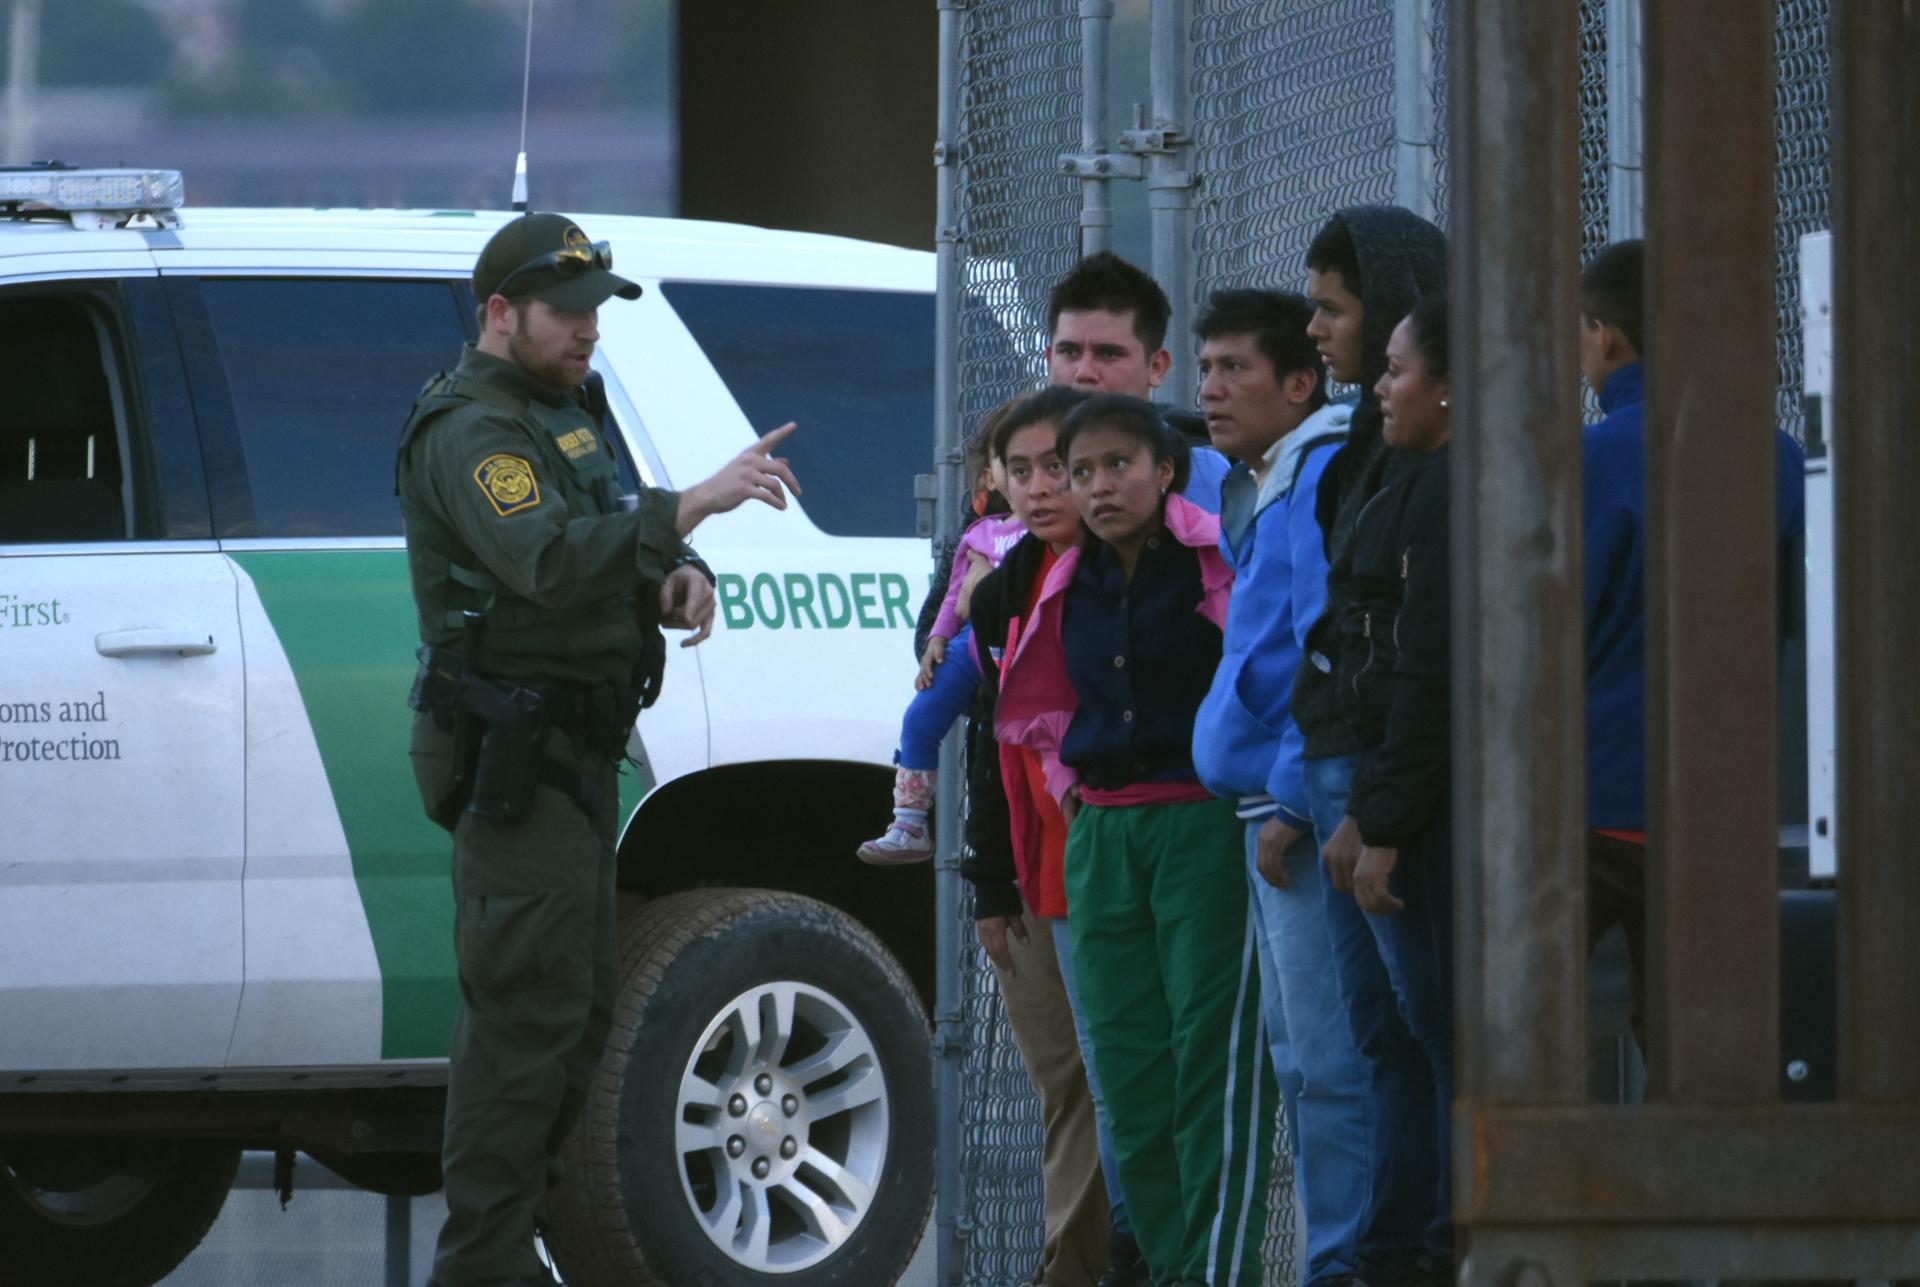 Un agente de la patrulla fronteriza estadounidense habla a un grupo de jóvenes migrantes centroamericanos. Imagen de archivo.EFE/Rey R. Jauregui
